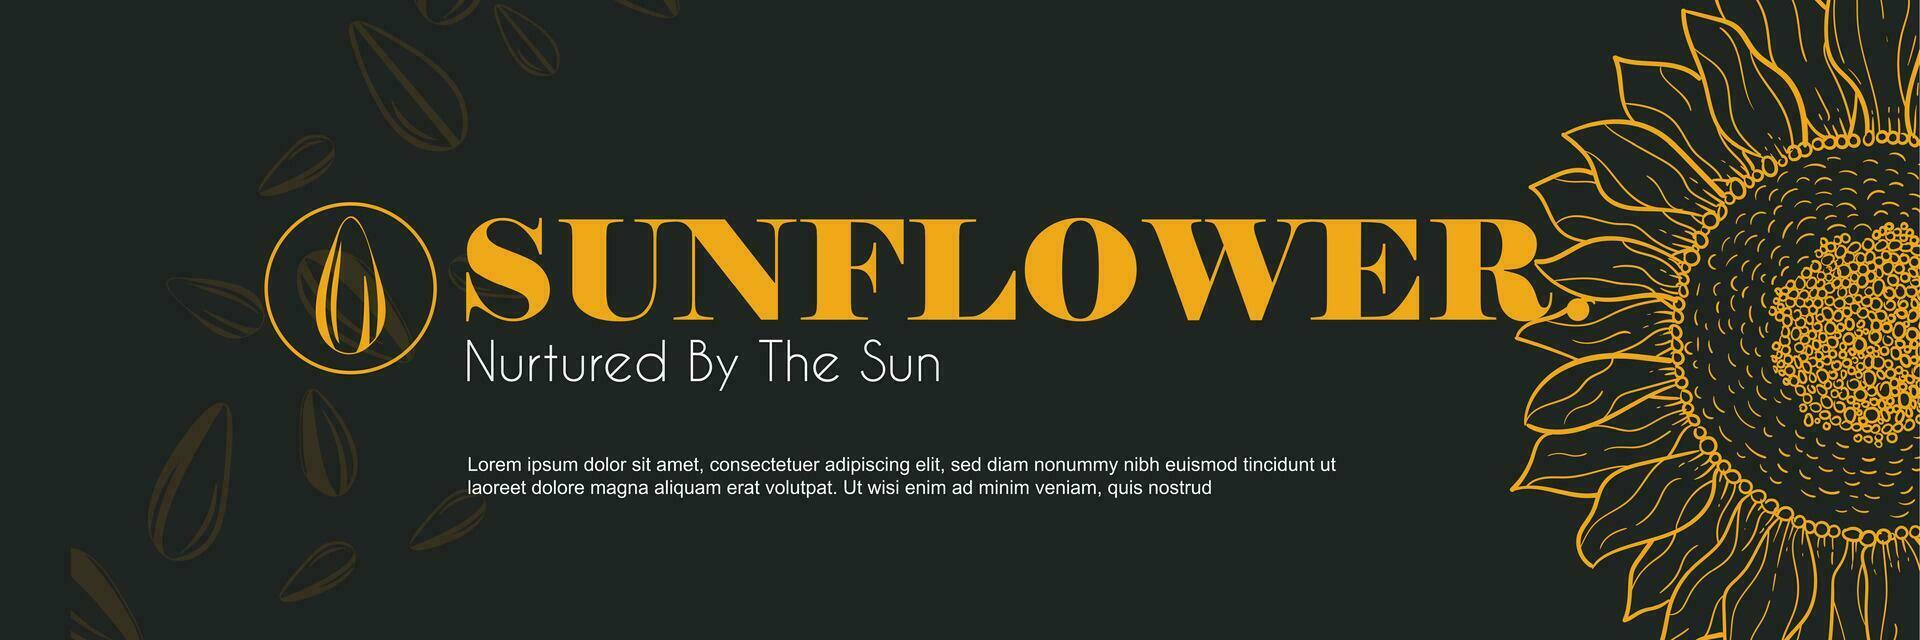 Sonnenblume Öl Vektor Vorlagen von Geschäft Banner. handgemalt Sonnenblume, Sonnenblume Samen Muster, und Text Raum auf ein schwarz Luxus Hintergrund. Produktion von Sonnenblume Konzept im Gravur Stil